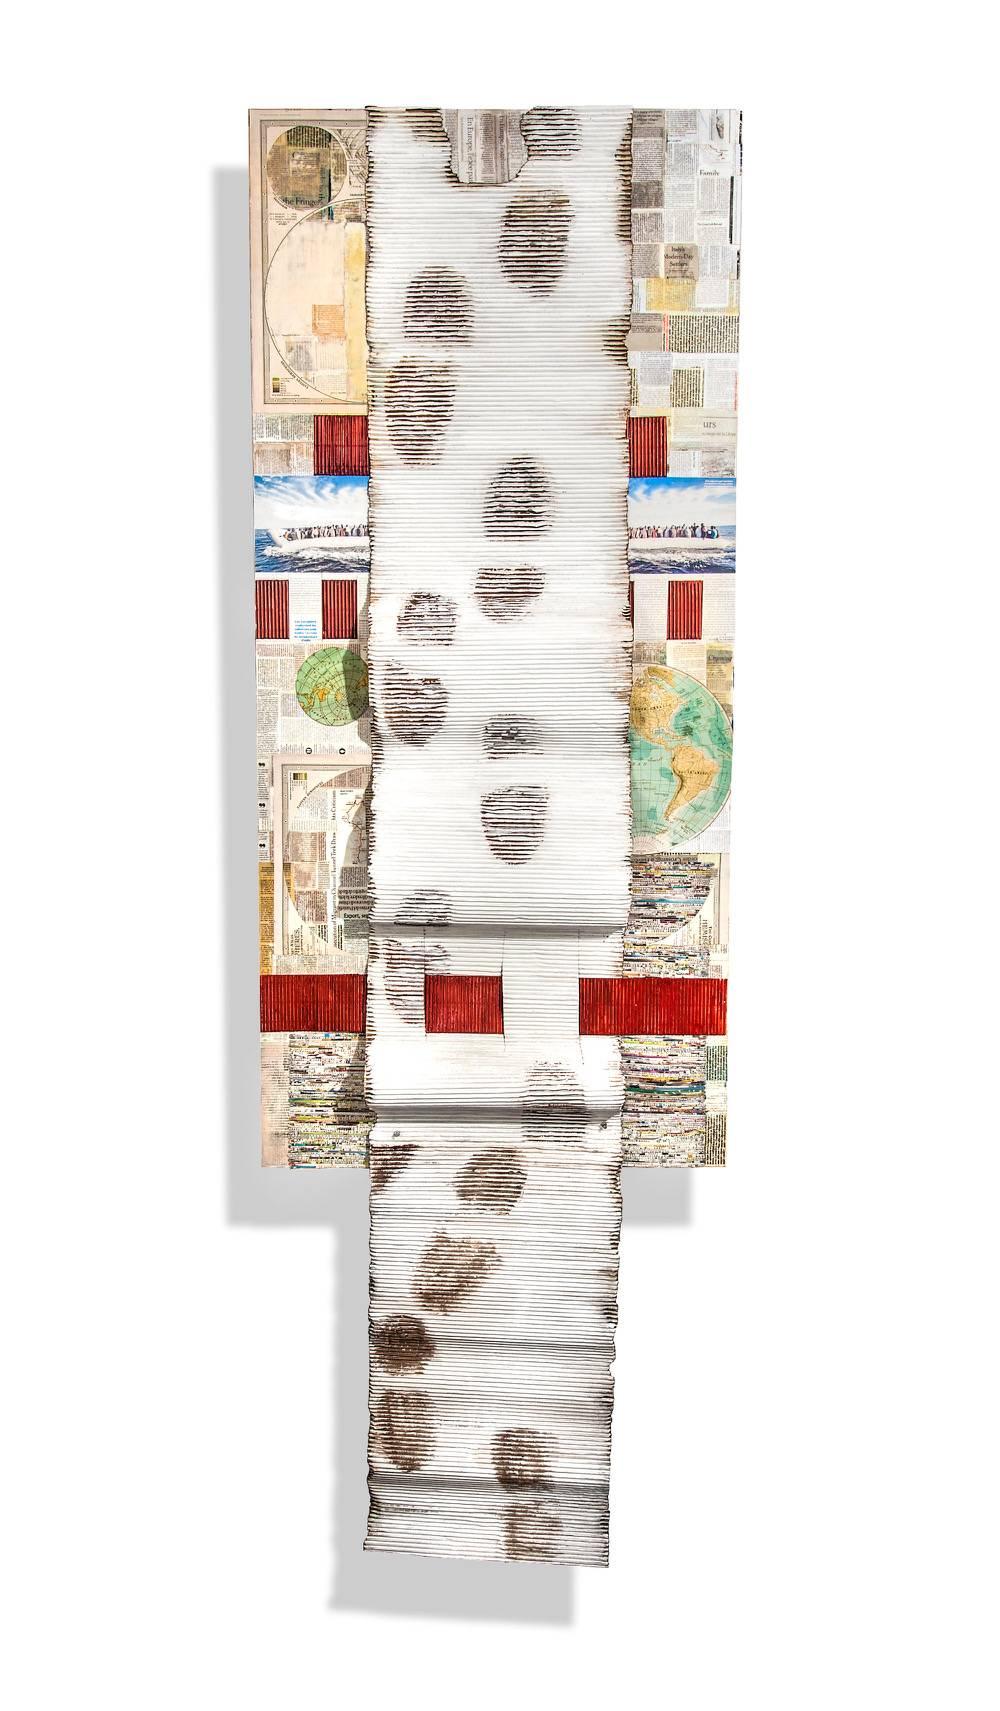 "Exodus" von Joan Giordano
Gemischte Medien, handgeschöpftes Abaca-Papier, Zeitungen, Fotodrucke, Enkaustik

Die im Museum ausgestellte und gesammelte Künstlerin Joan Giordano ist bekannt für ihre einzigartigen handgefertigten Papierskulpturen und